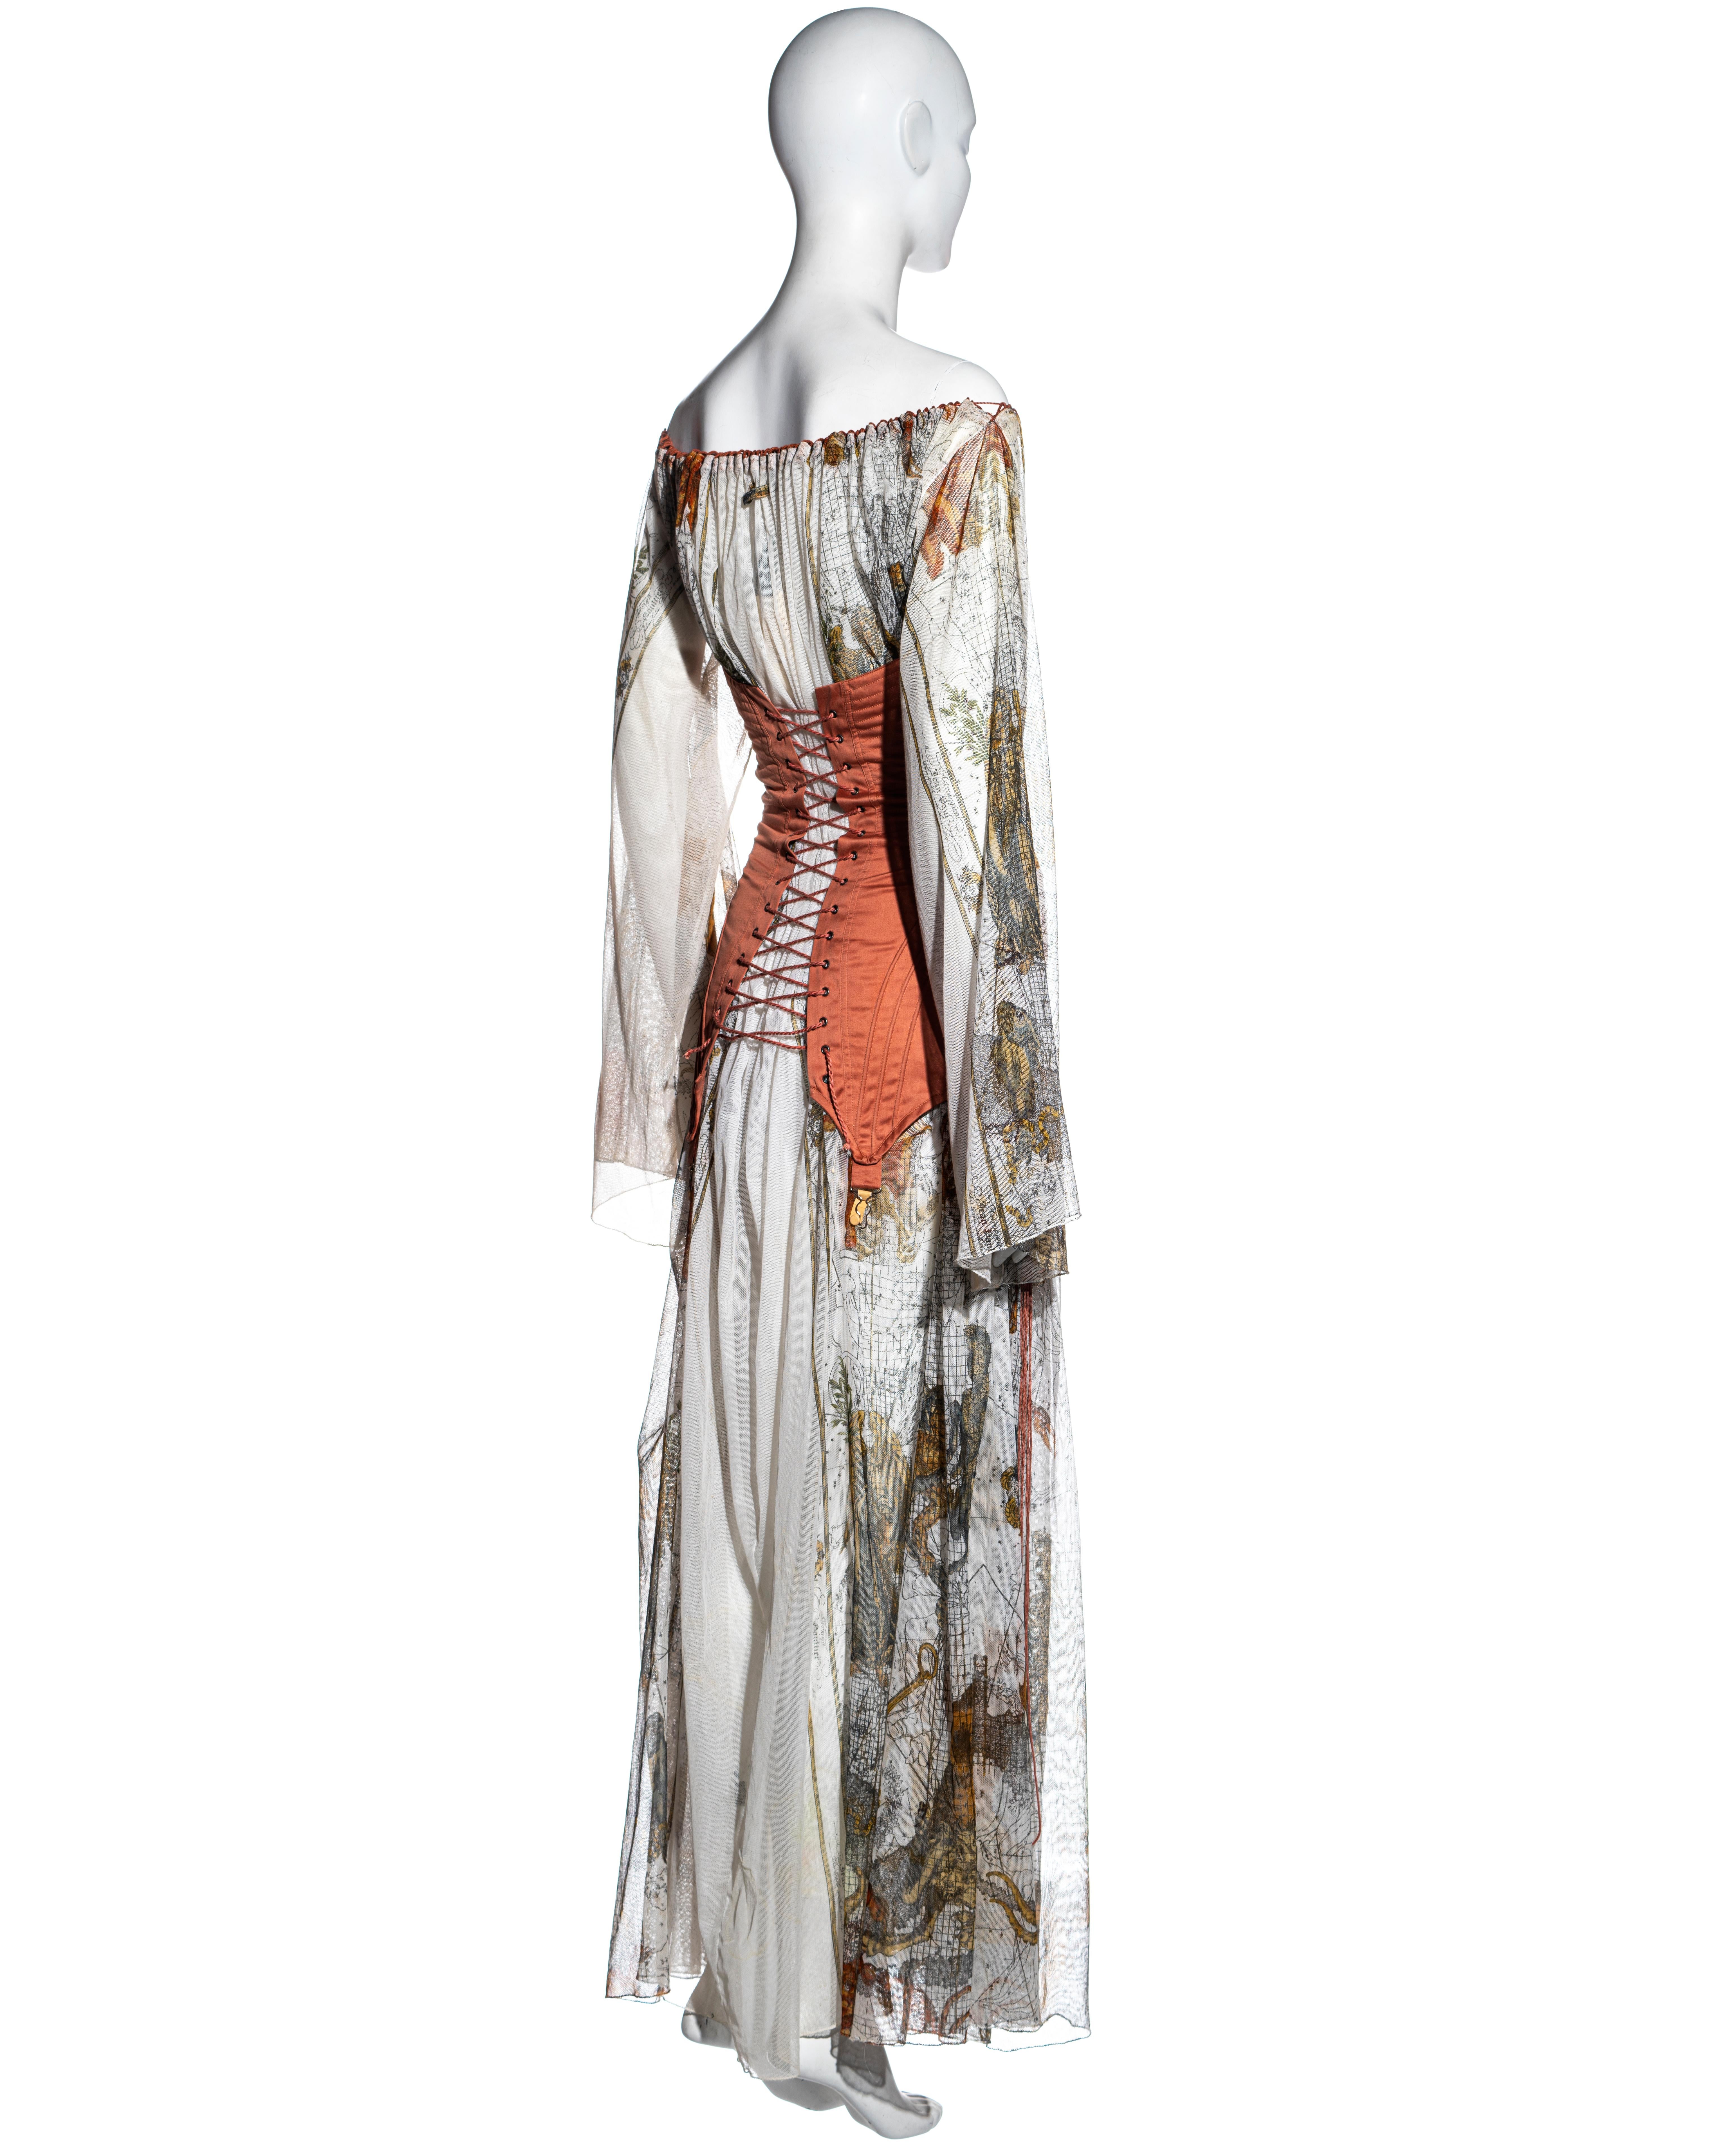 Jean Paul Gaultier zodiac print cotton muslin corset off shoulder dress, ss 1994 7